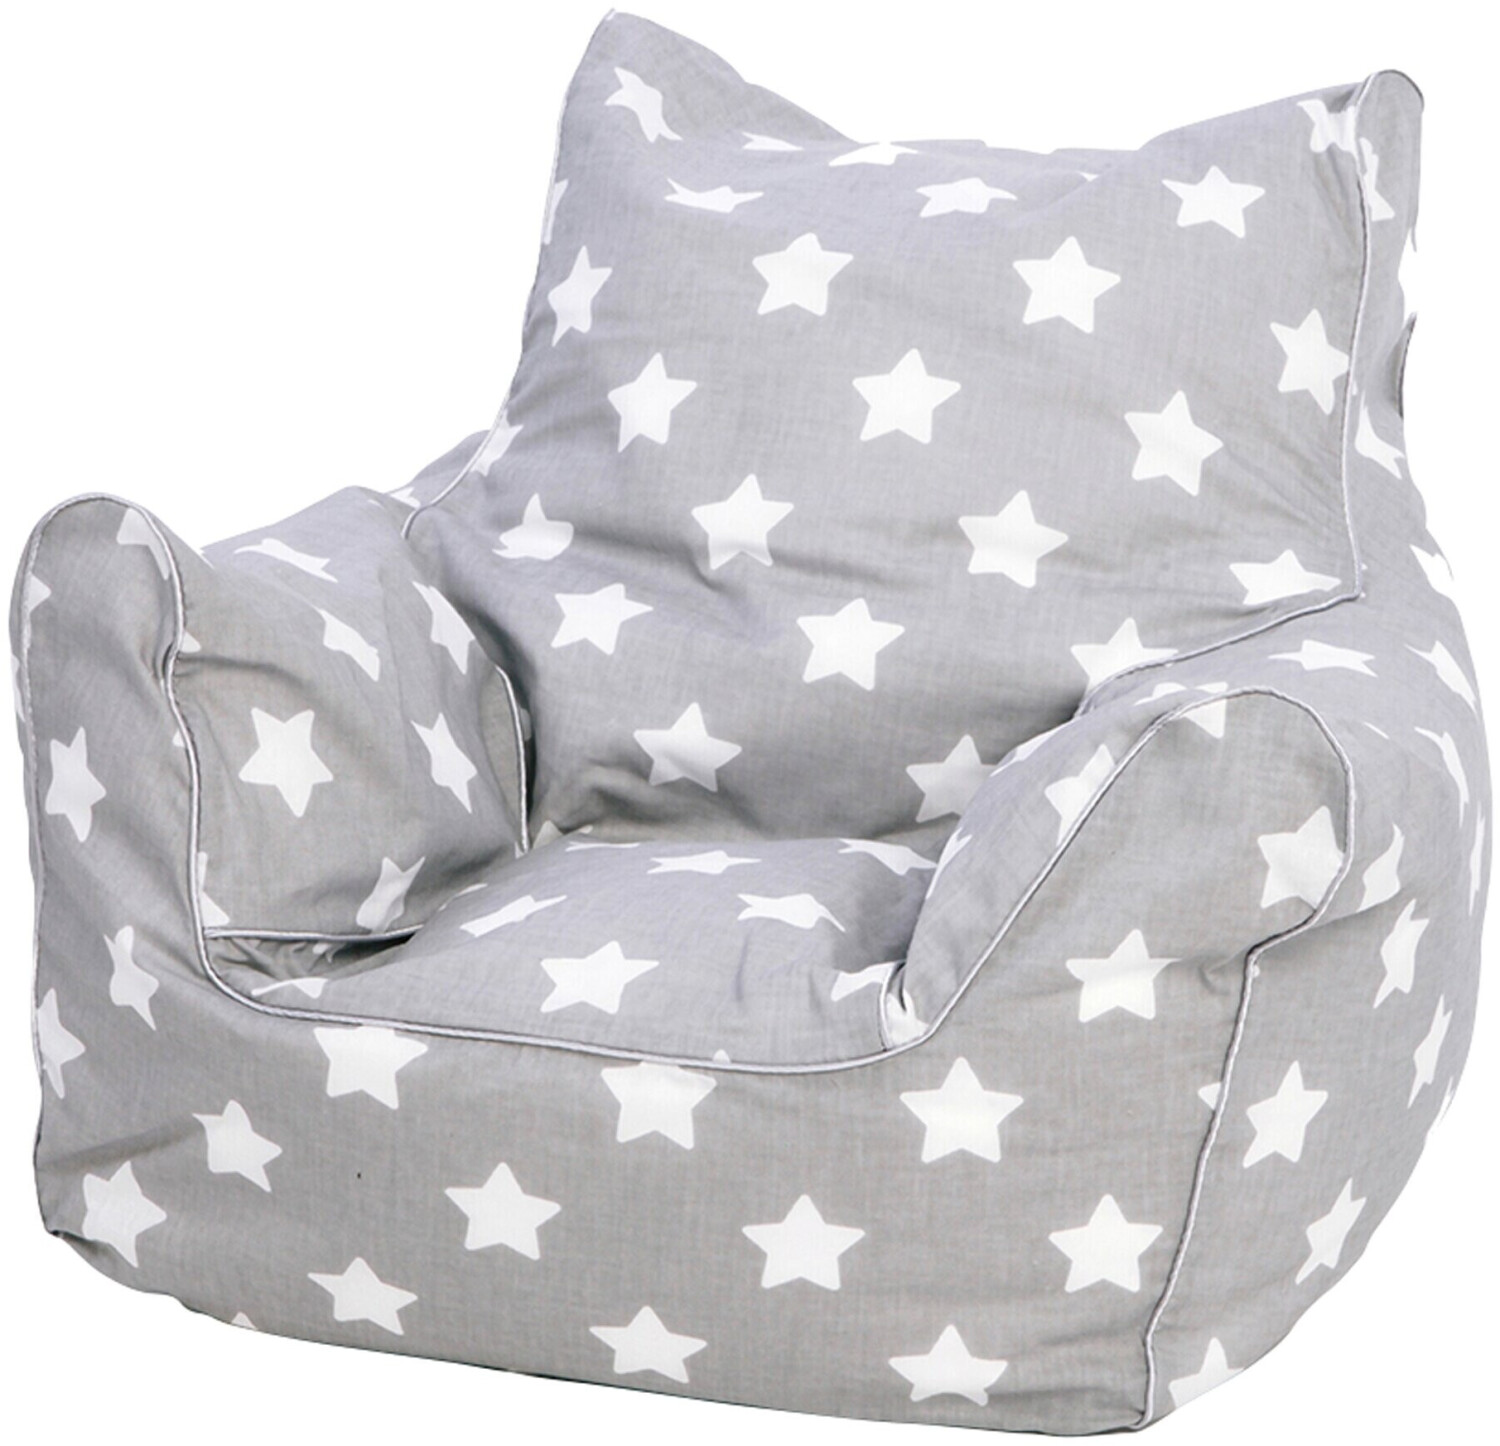 Knorrtoys Kindersitzsack grey white stars ab 30,12 € | Preisvergleich bei